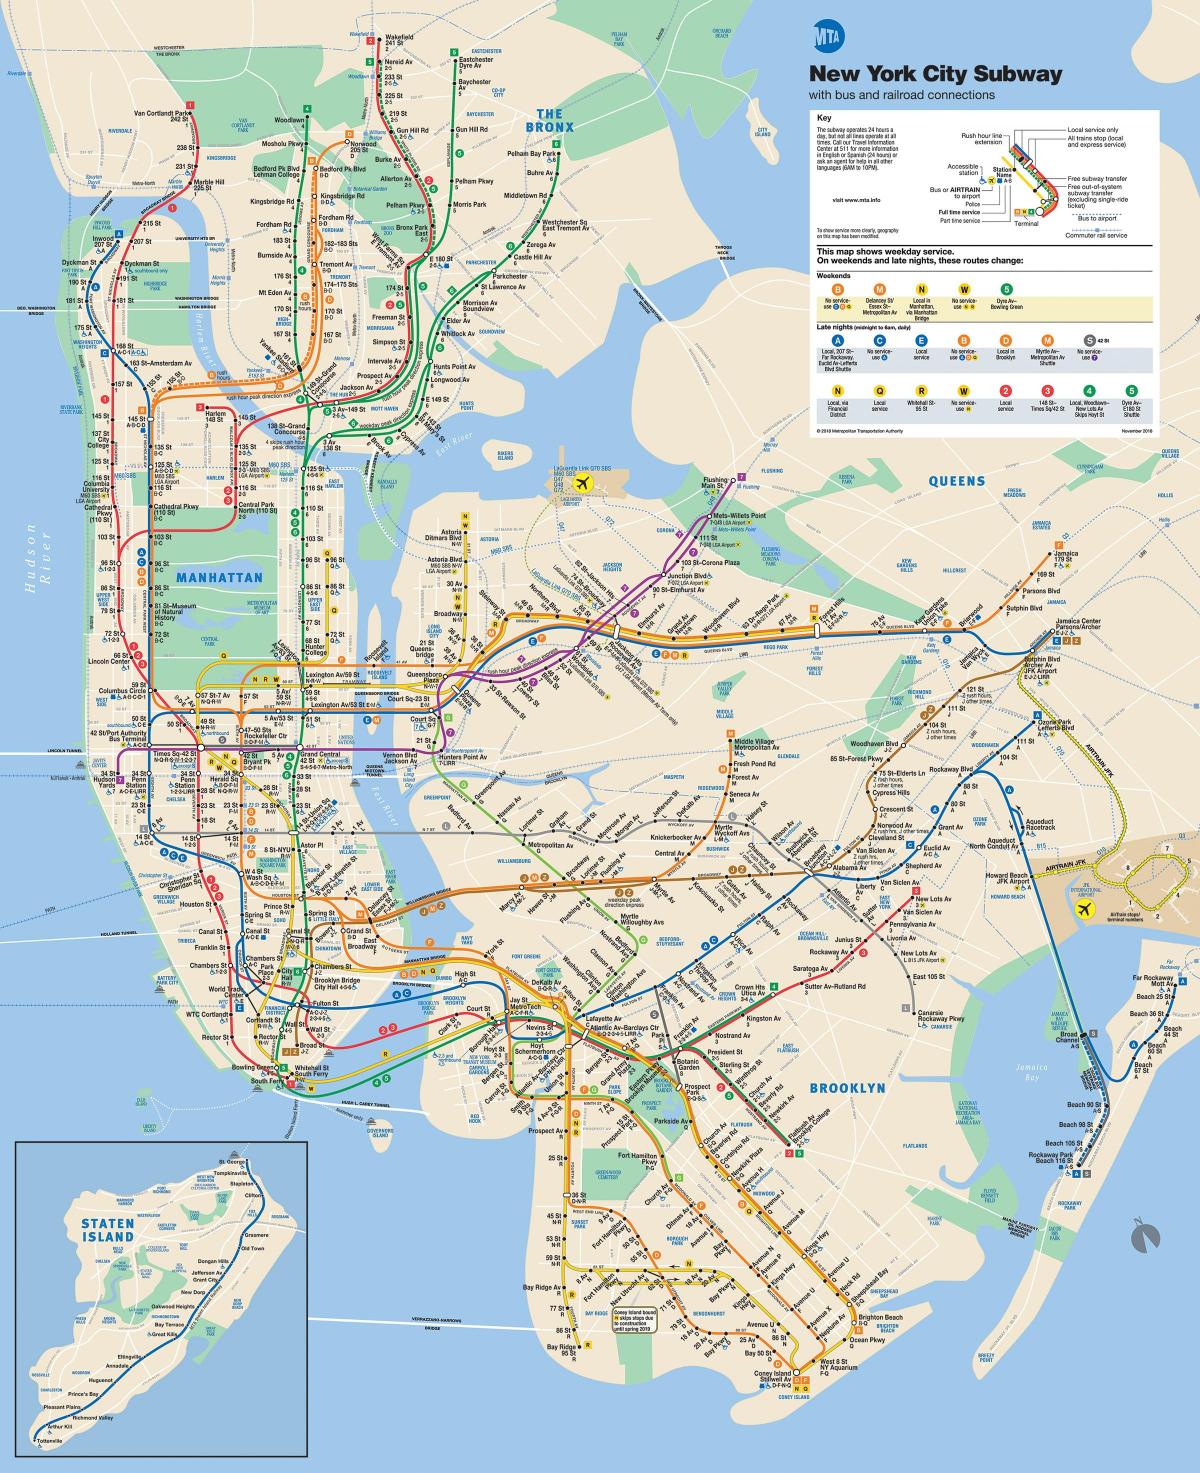 Manhattan transportit publik hartë